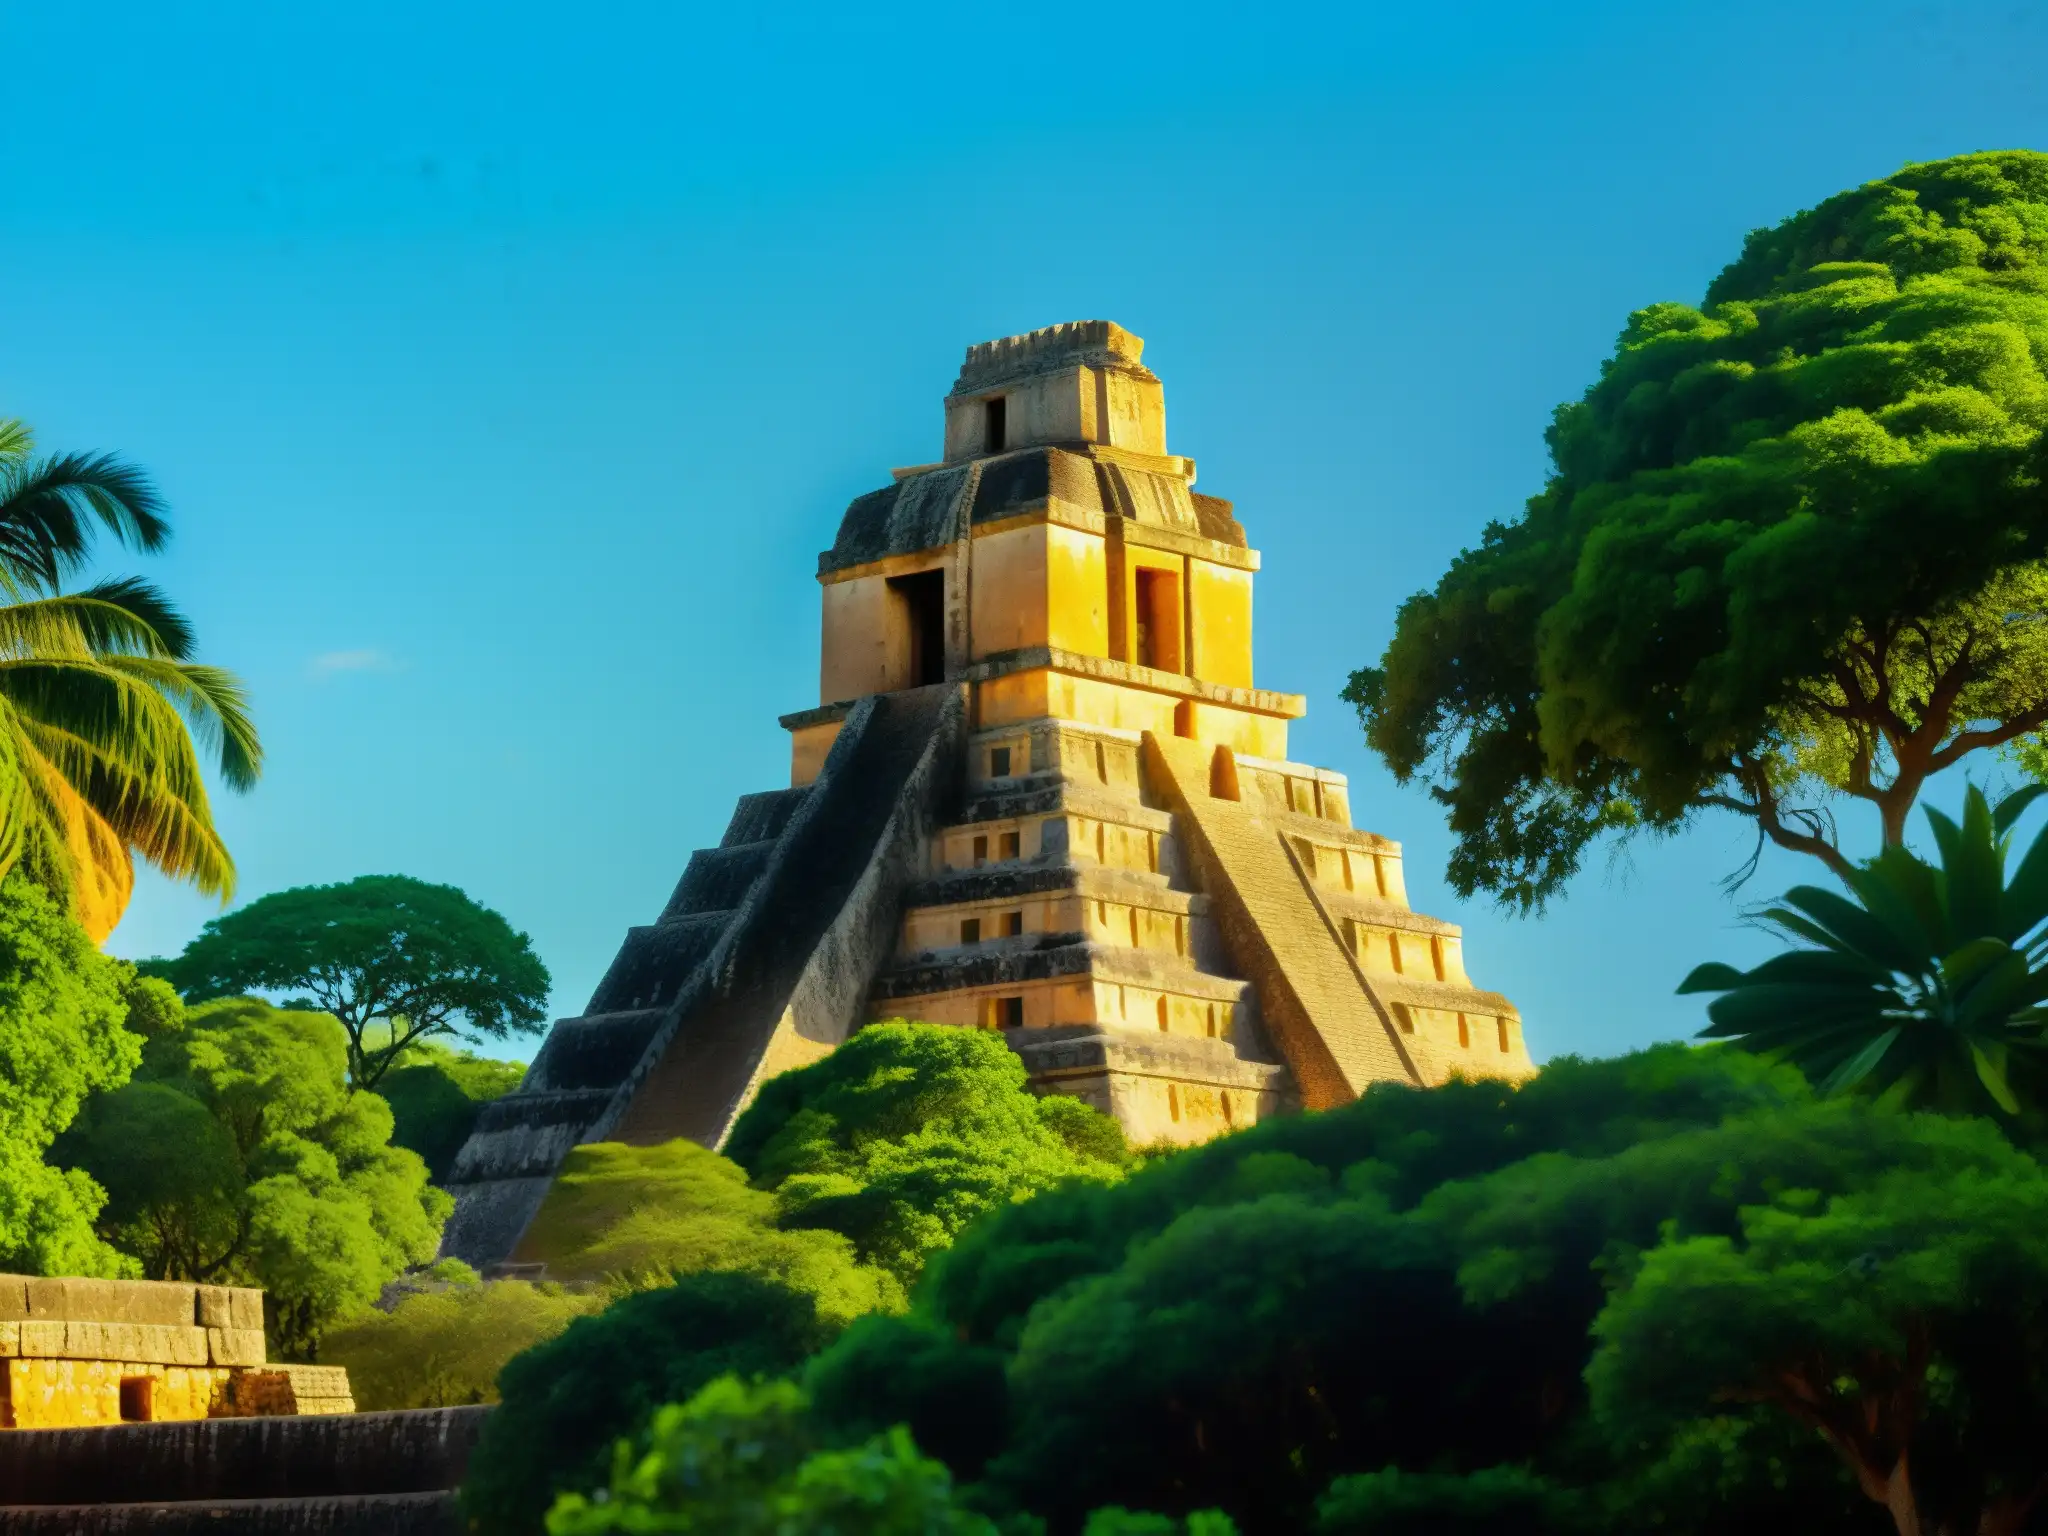 El Enano de Uxmal protector emerge entre ruinas mayas, iluminado por el cálido sol y rodeado de exuberante vegetación